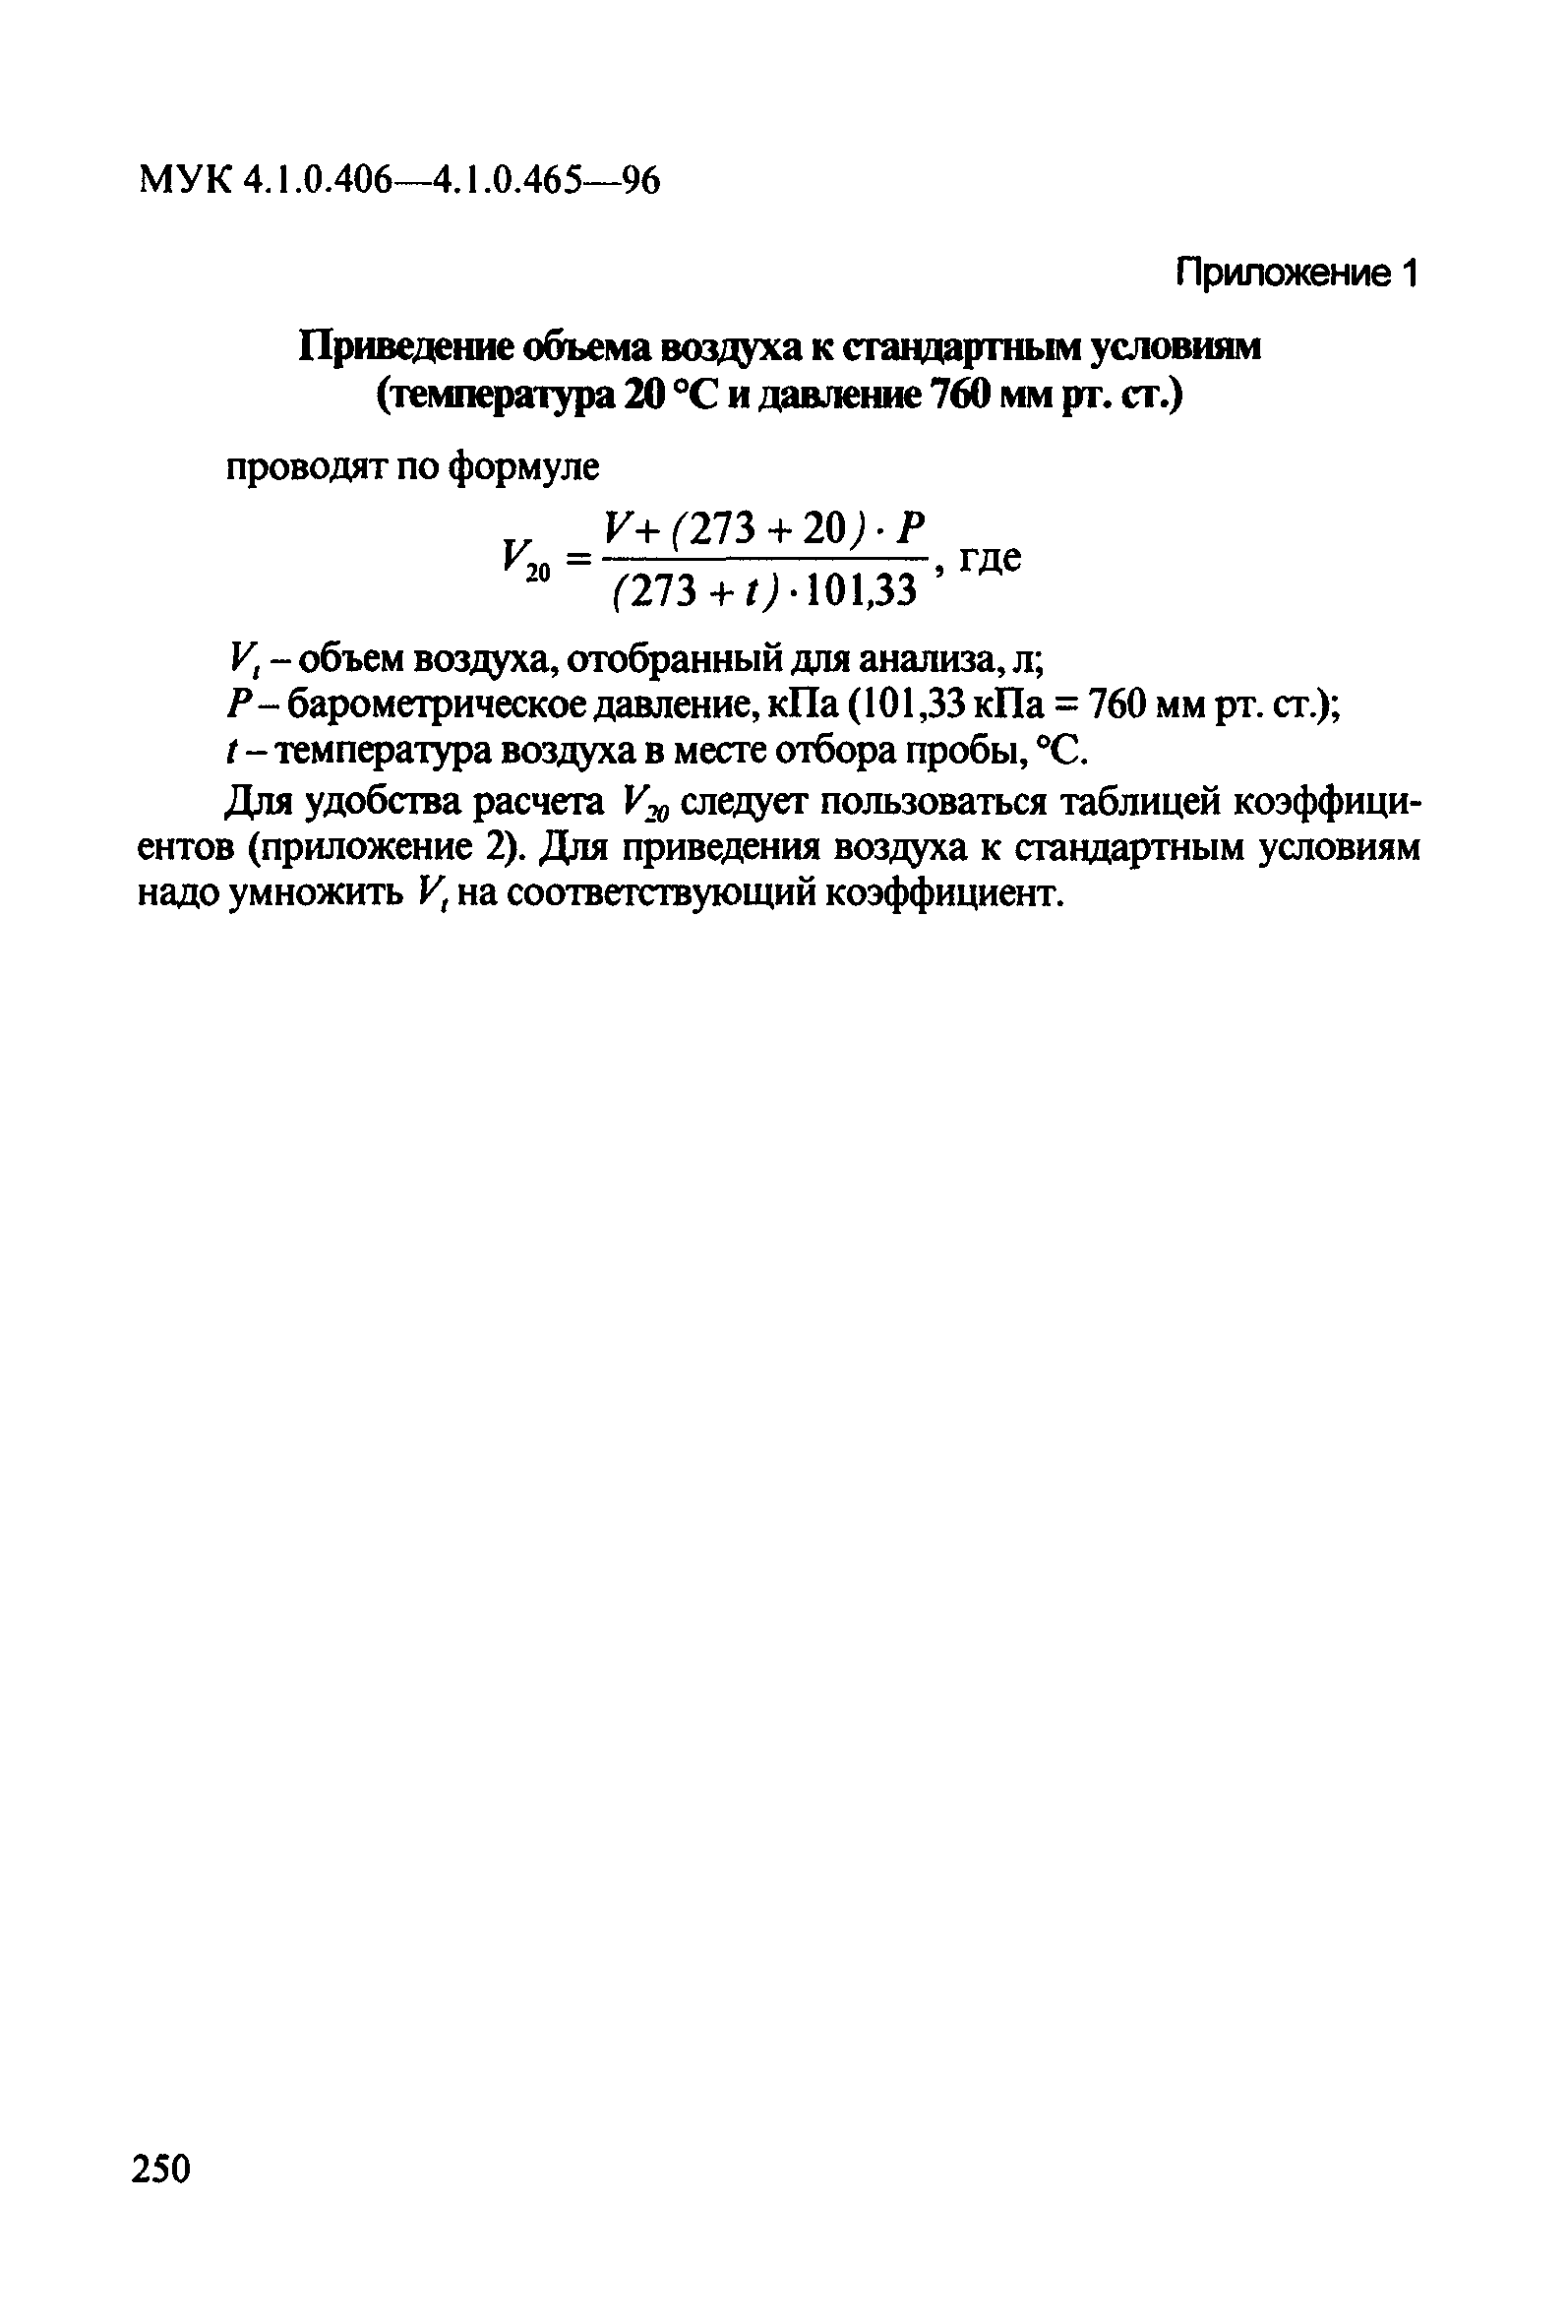 МУК 4.1.0.417-96